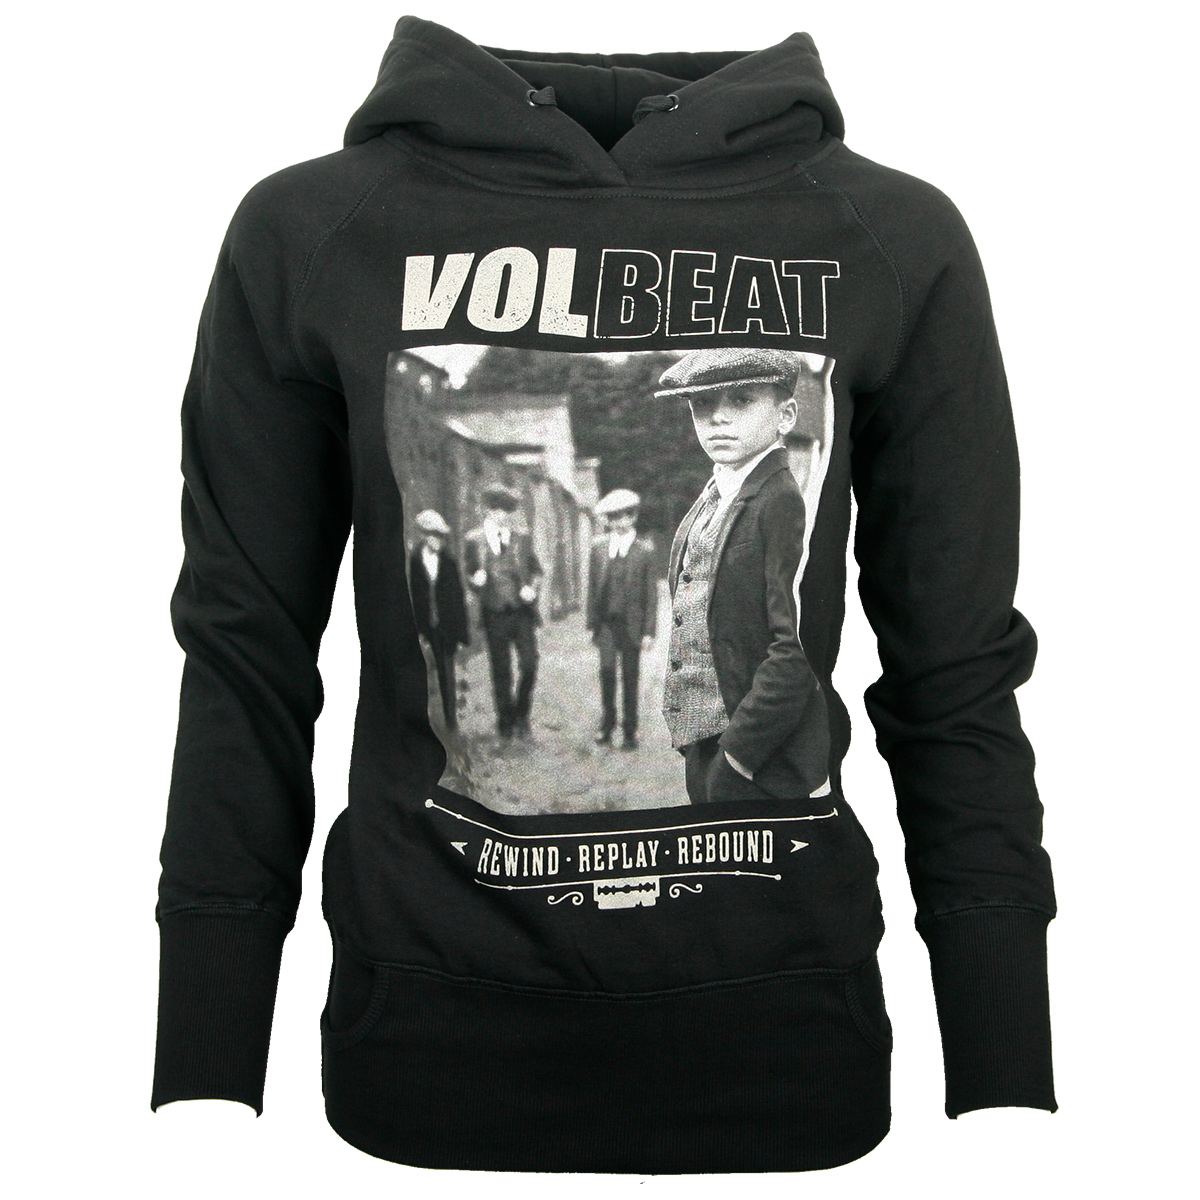 Volbeat - Girlie Kapuzenpullover - Rewind Replay Rebound - schwarz